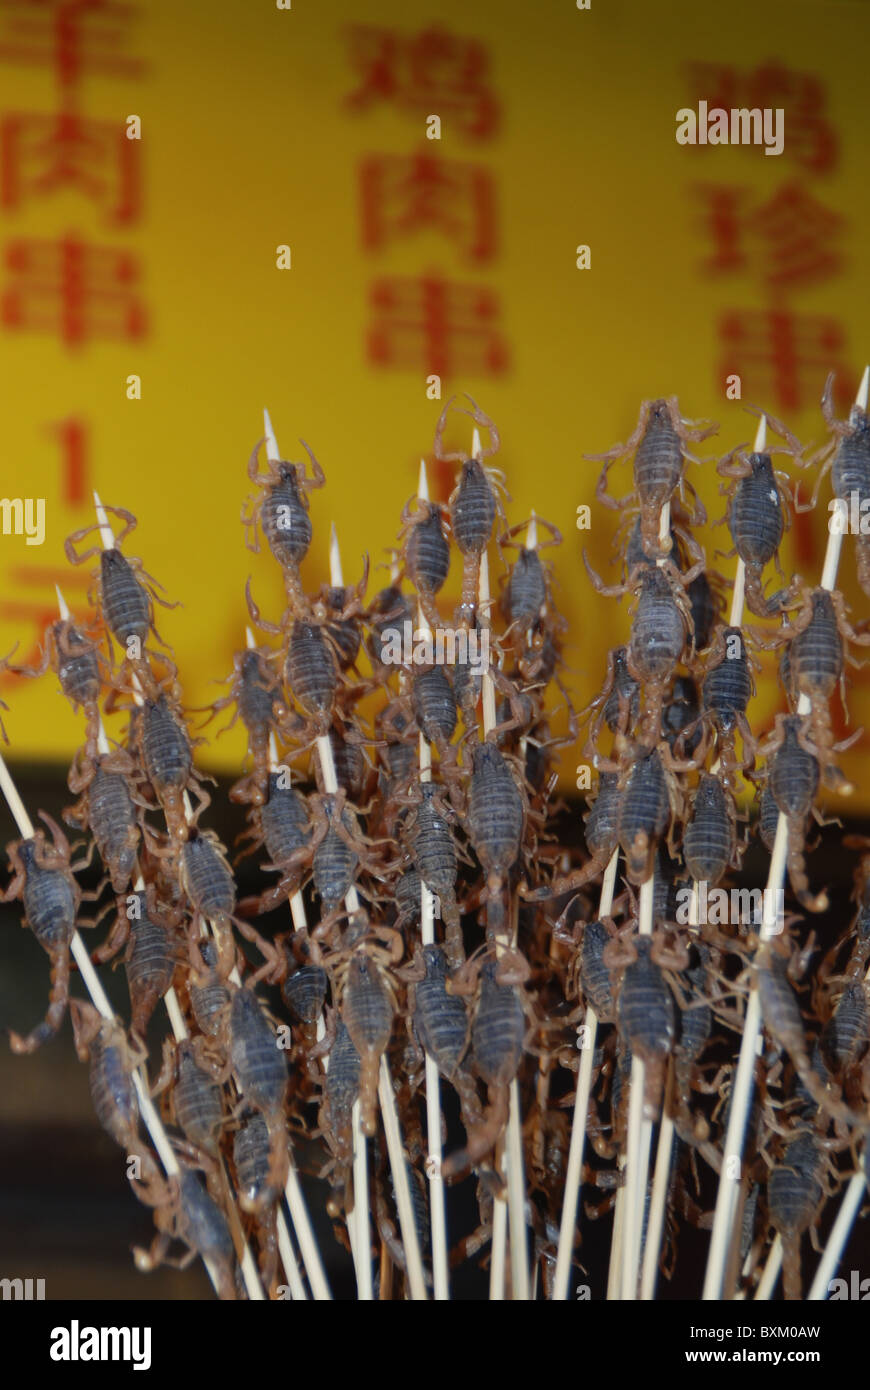 Marché alimentaire, des scorpions, des scarabées, la rue Wangfujing, Beijing, Chine Banque D'Images